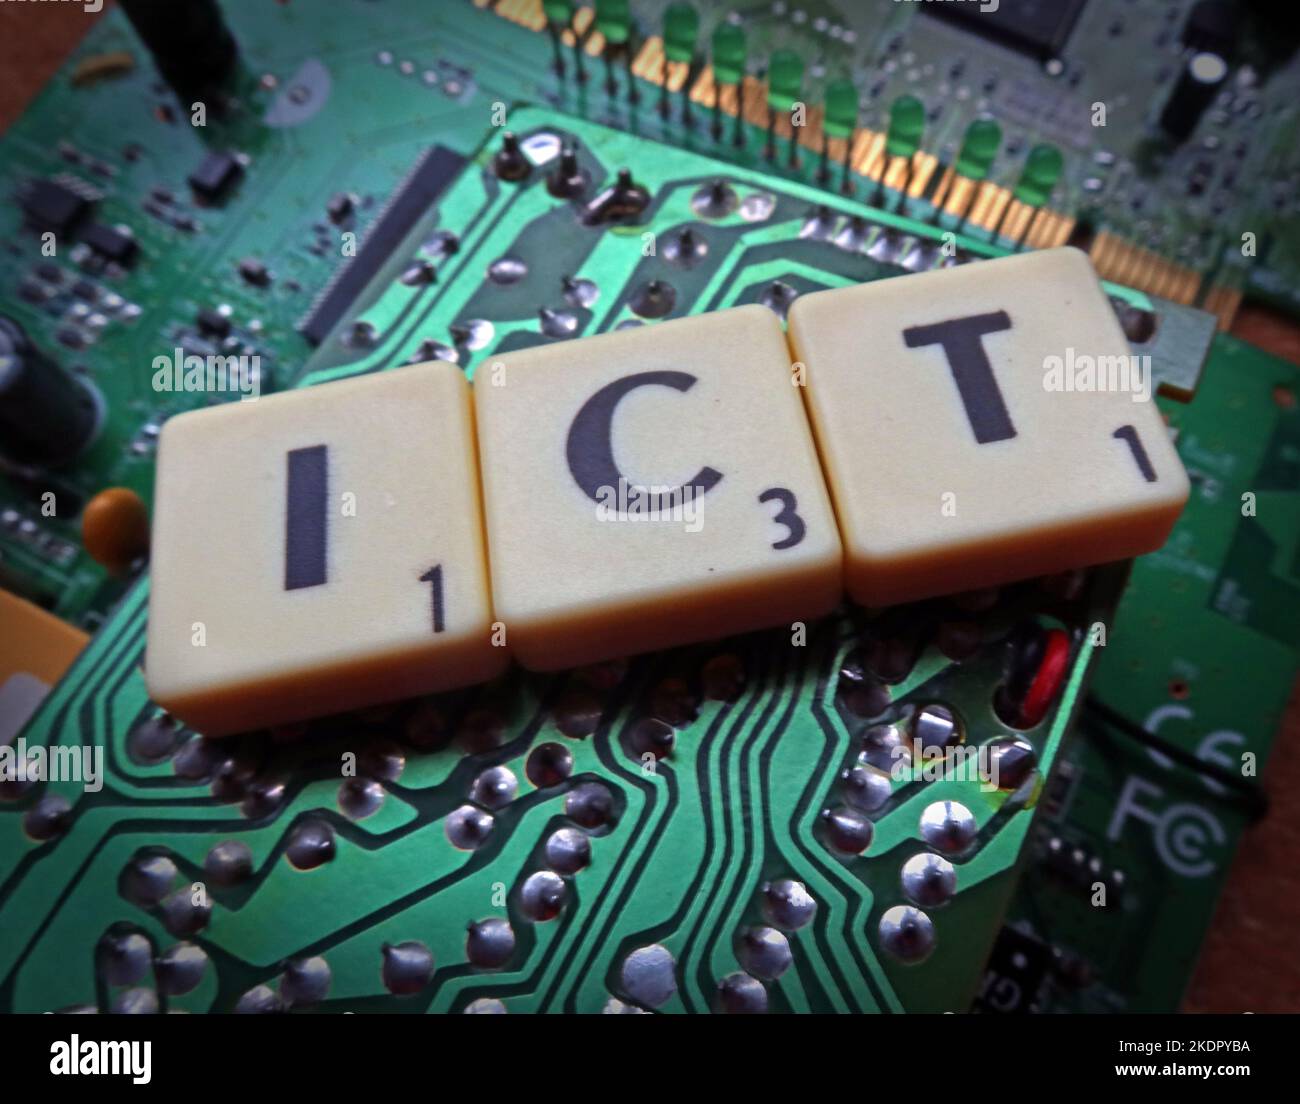 ICT - Informations- und Kommunikationstechnologie - Schraber von Buchstaben/Wörtern auf einer elektronischen Leiterplatte Stockfoto